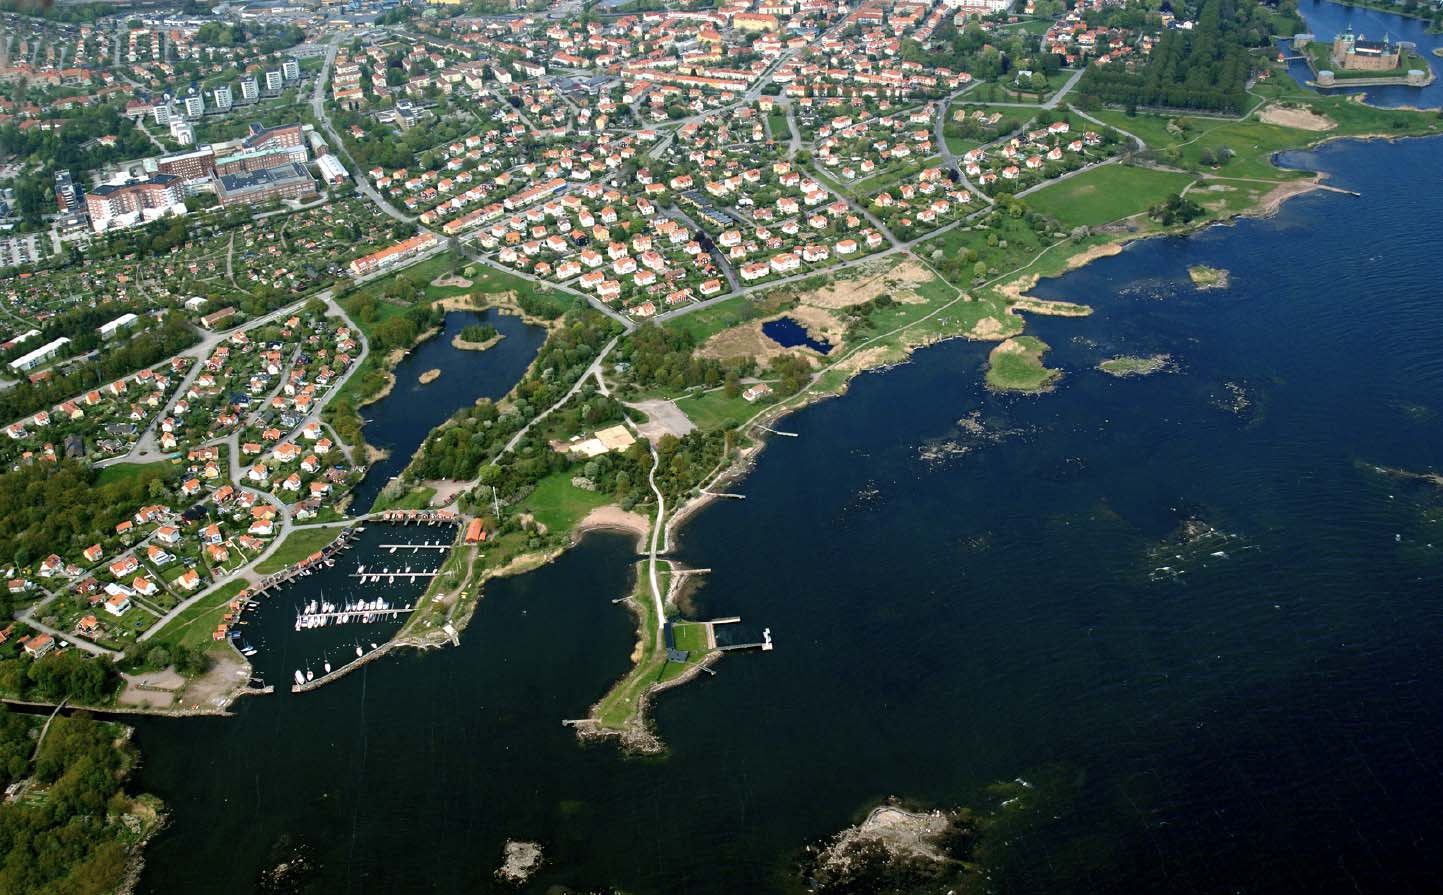 Övergripande beskrivning Utredningsområdet idag - användning och målpunkter Utredningsområdet ligger som en naturskön enklav mellan bostadsområdena och Kalmarsund, där samtliga områden mer eller